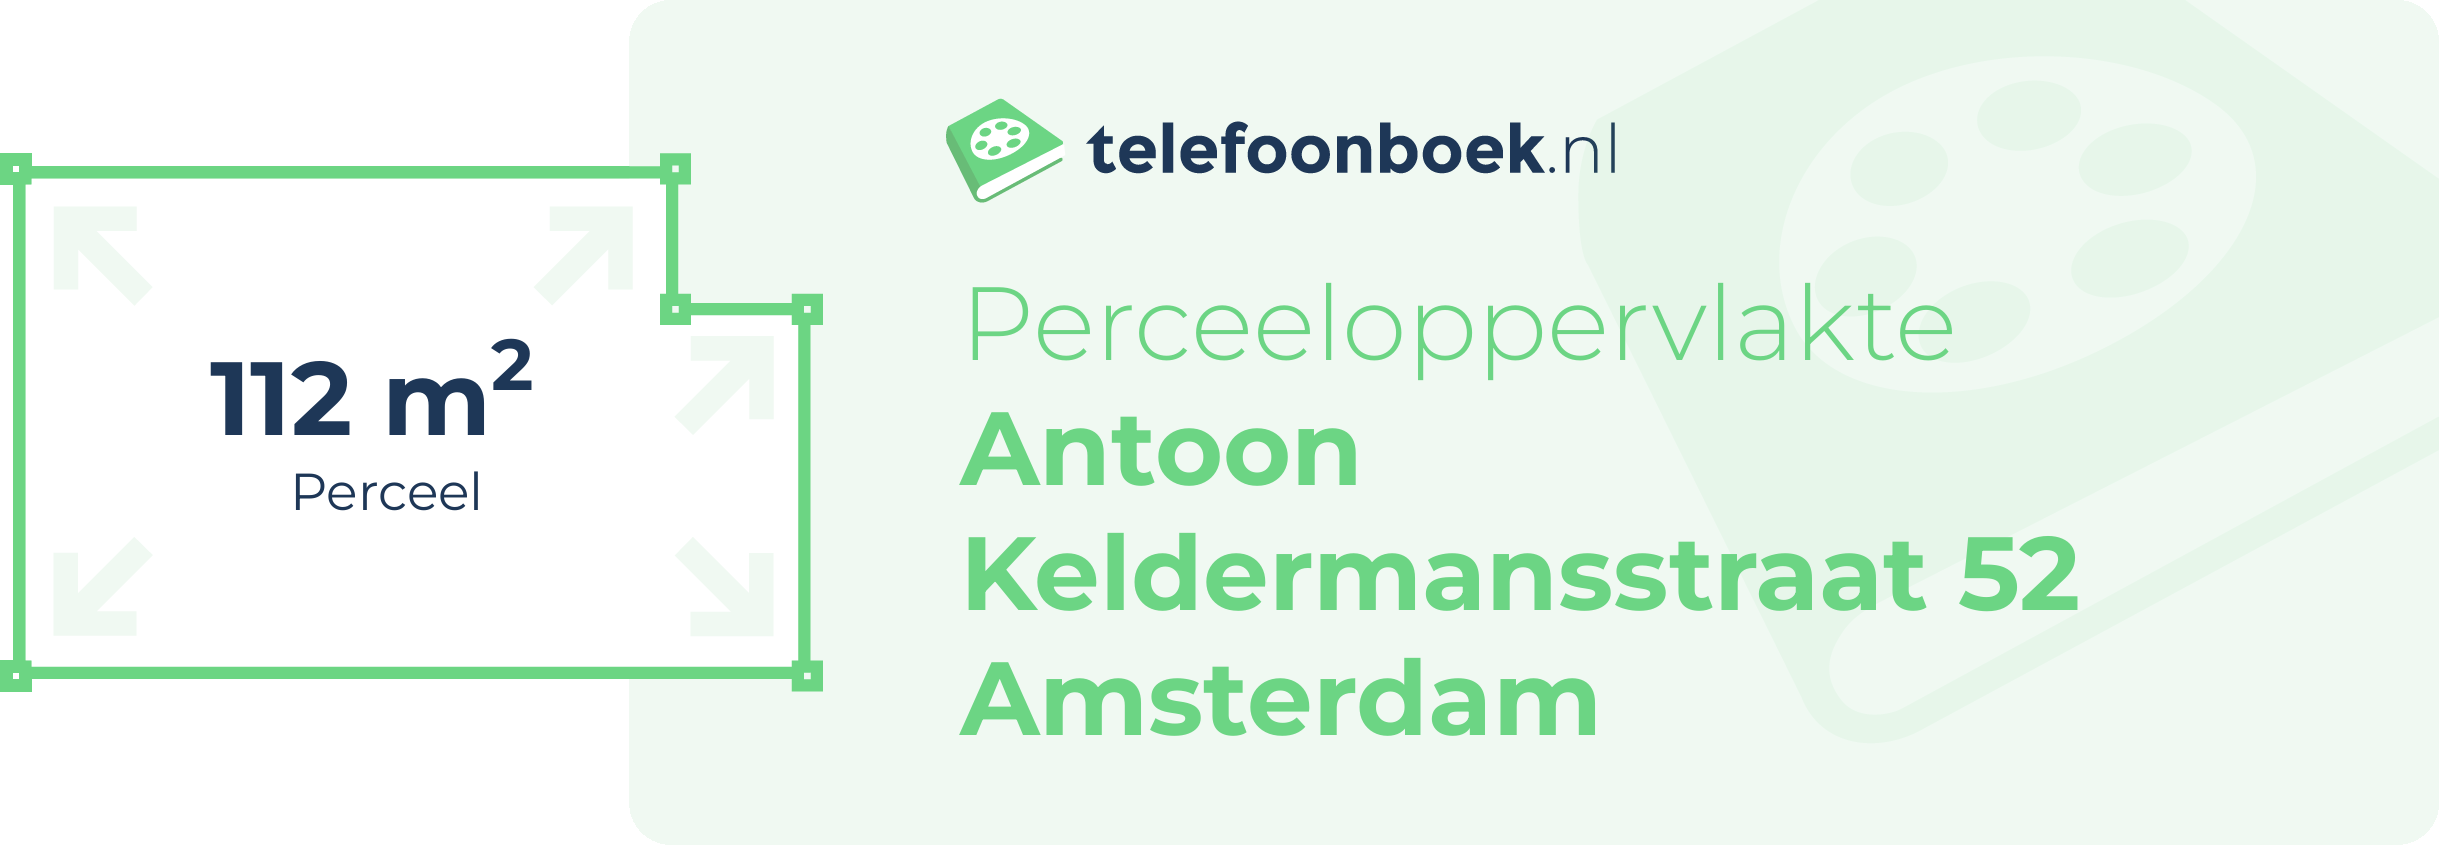 Perceeloppervlakte Antoon Keldermansstraat 52 Amsterdam